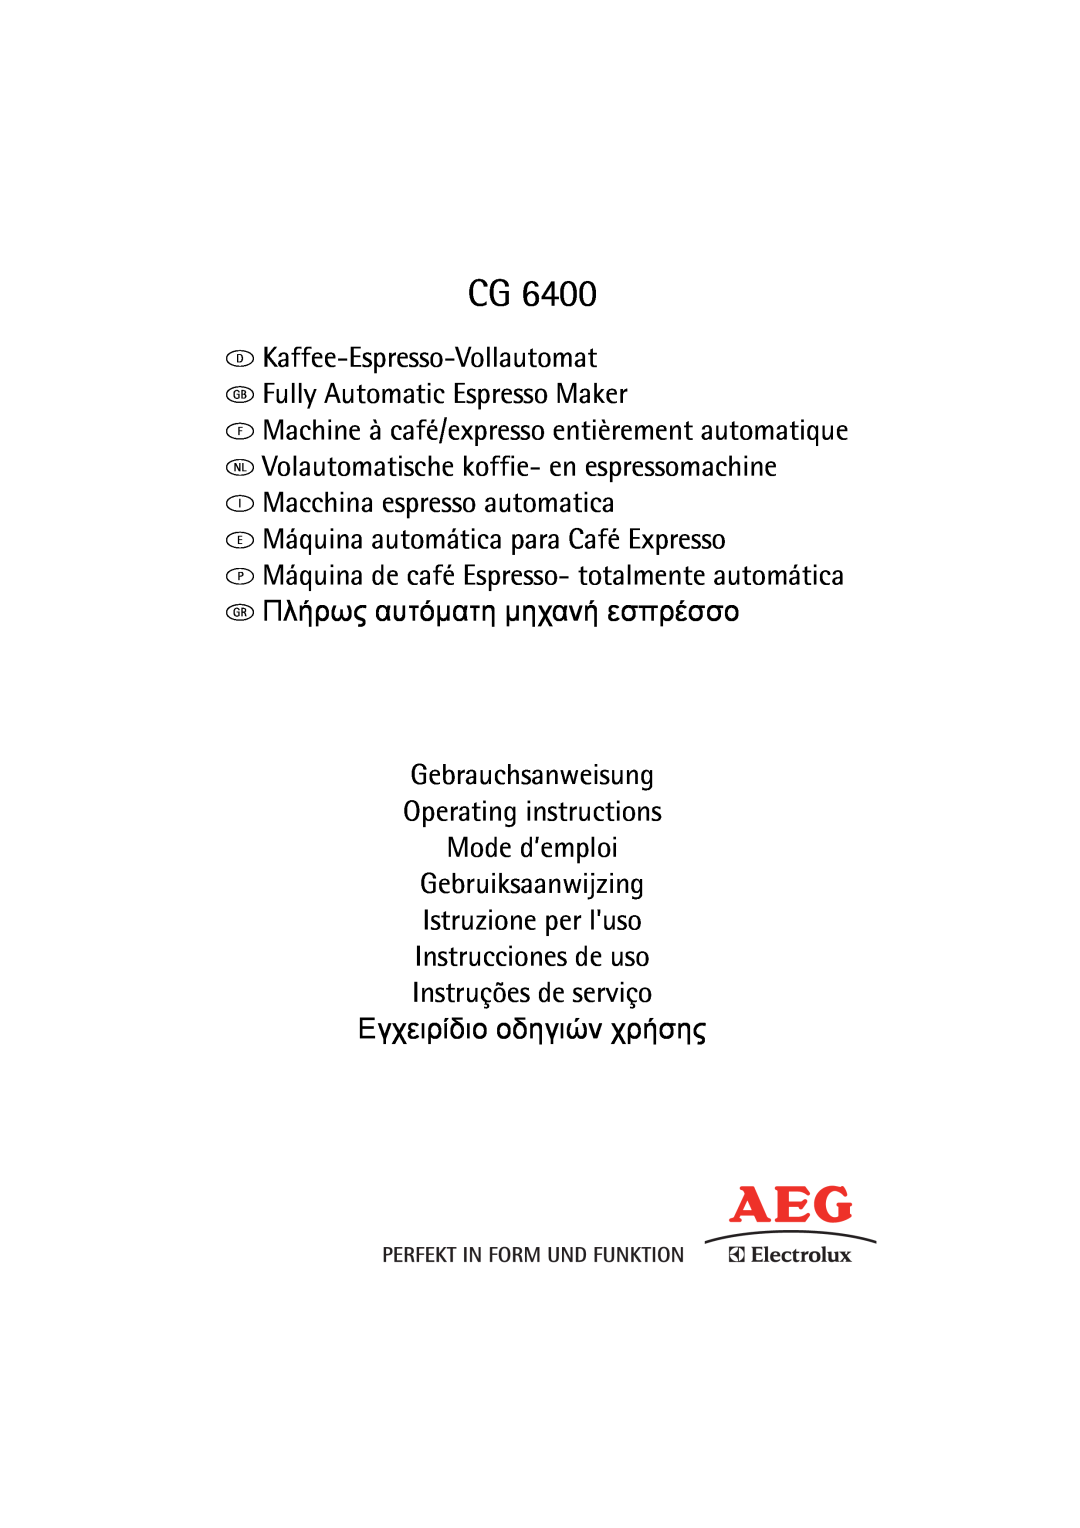 AEG CG 6400 manual 